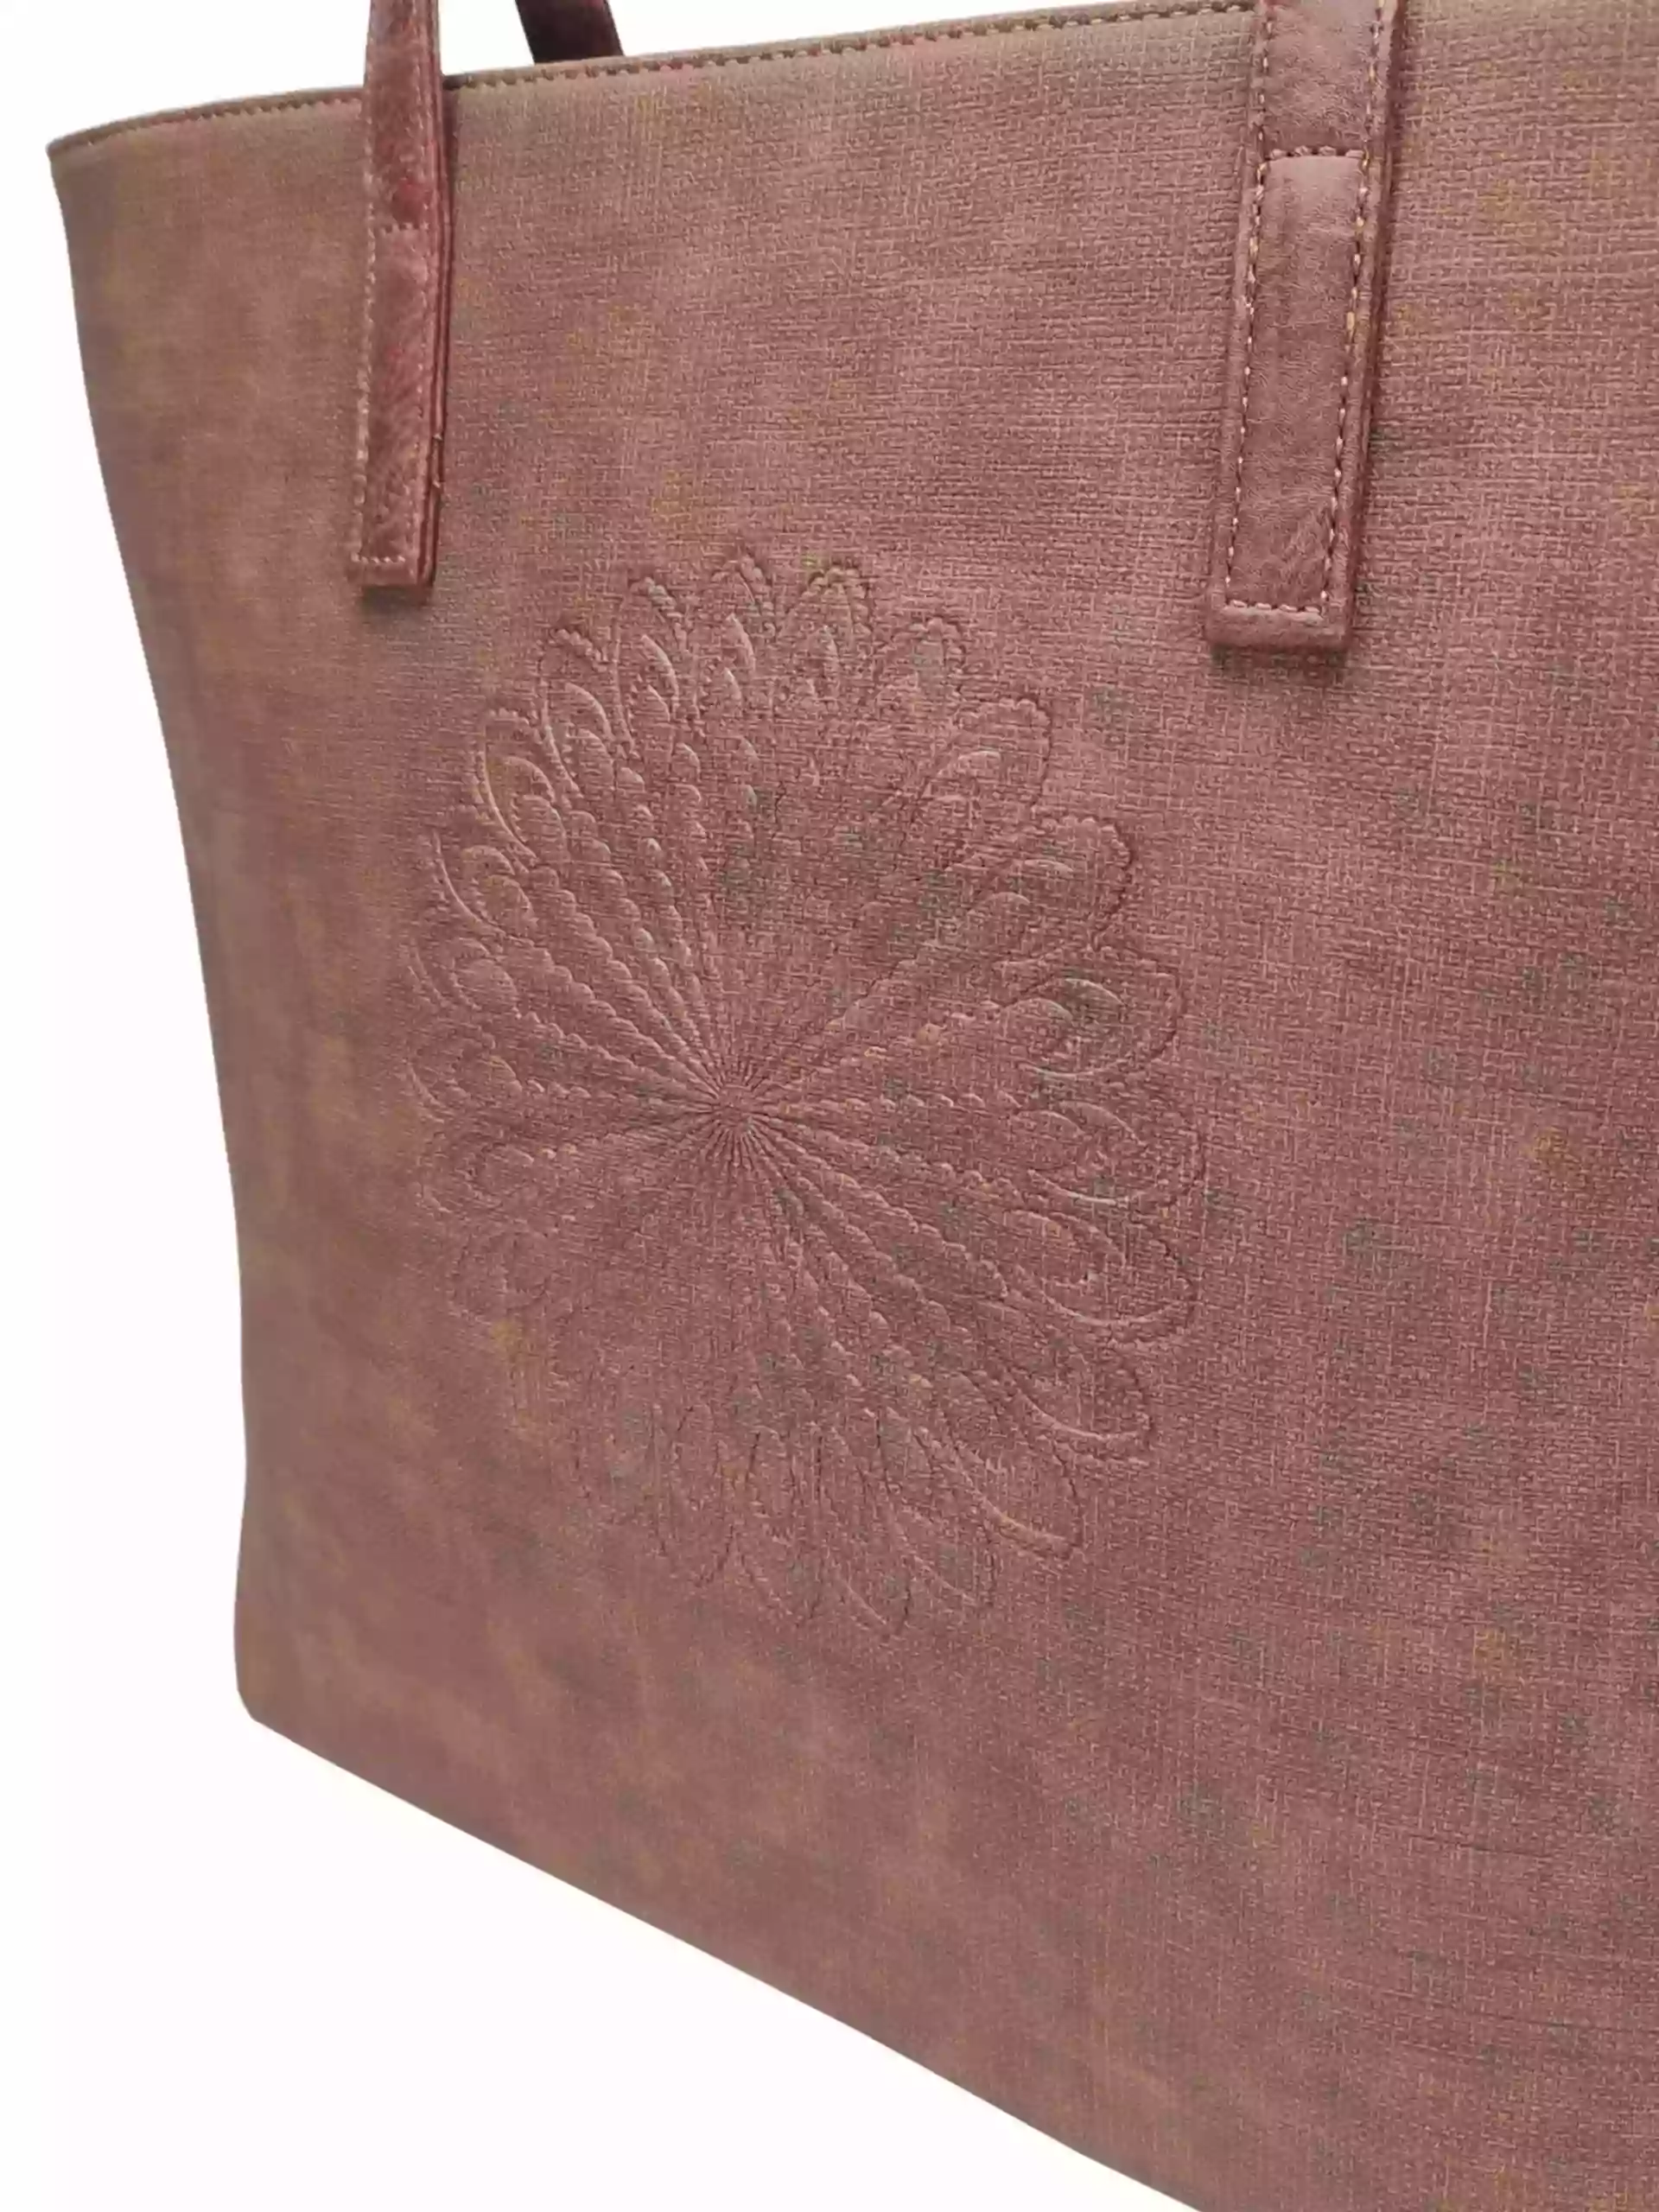 Středně hnědá dámská kabelka přes rameno s texturou, Tapple, H17409, detail zadní strany kabelky přes rameno